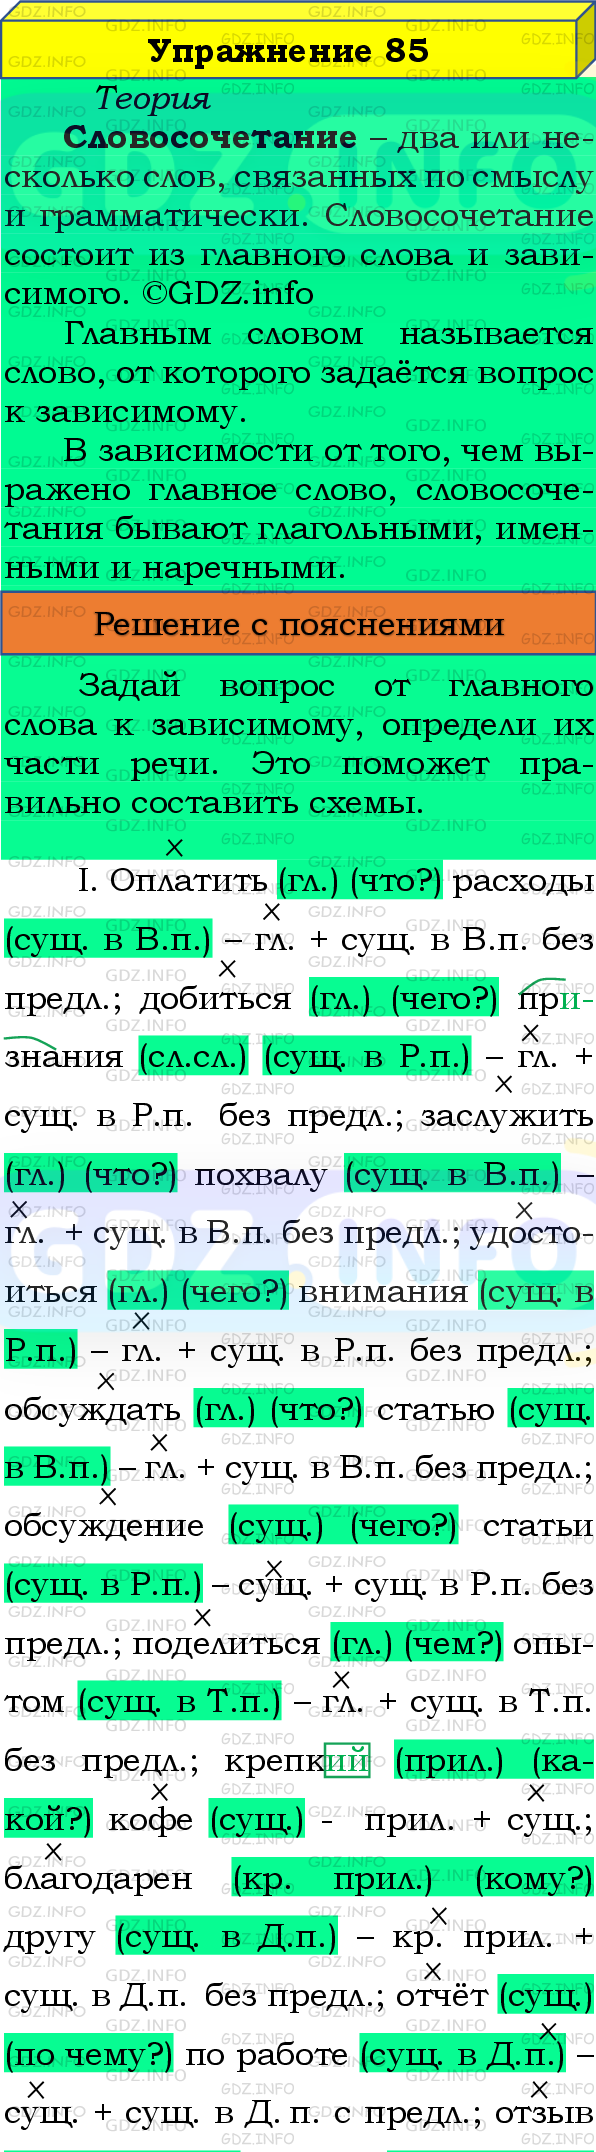 Фото подробного решения: Номер №85 из ГДЗ по Русскому языку 8 класс: Бархударов С.Г.